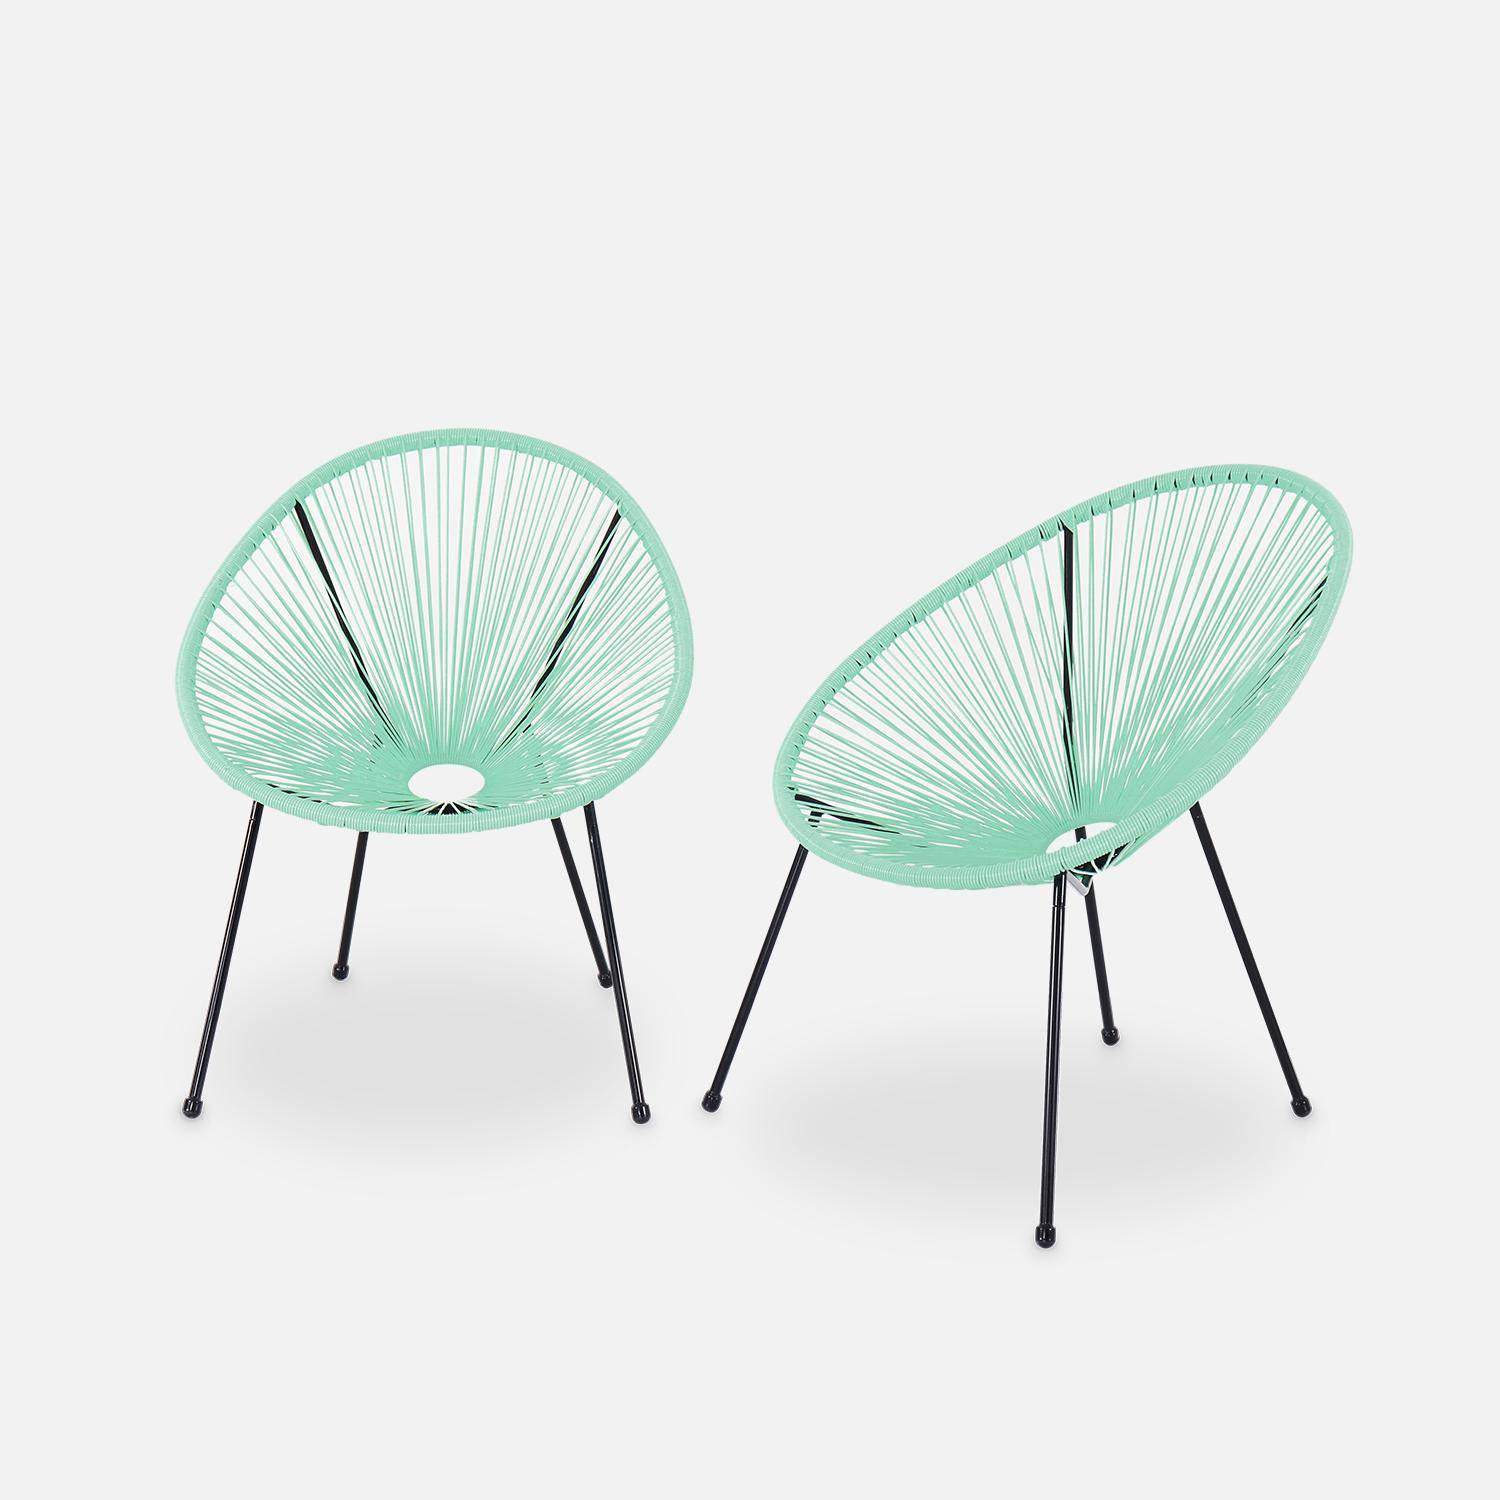 Lot de 2 fauteuils design Oeuf - Acapulco vert d'eau - Fauteuils 4 pieds design rétro, cordage plastique, intérieur / extérieur Photo2